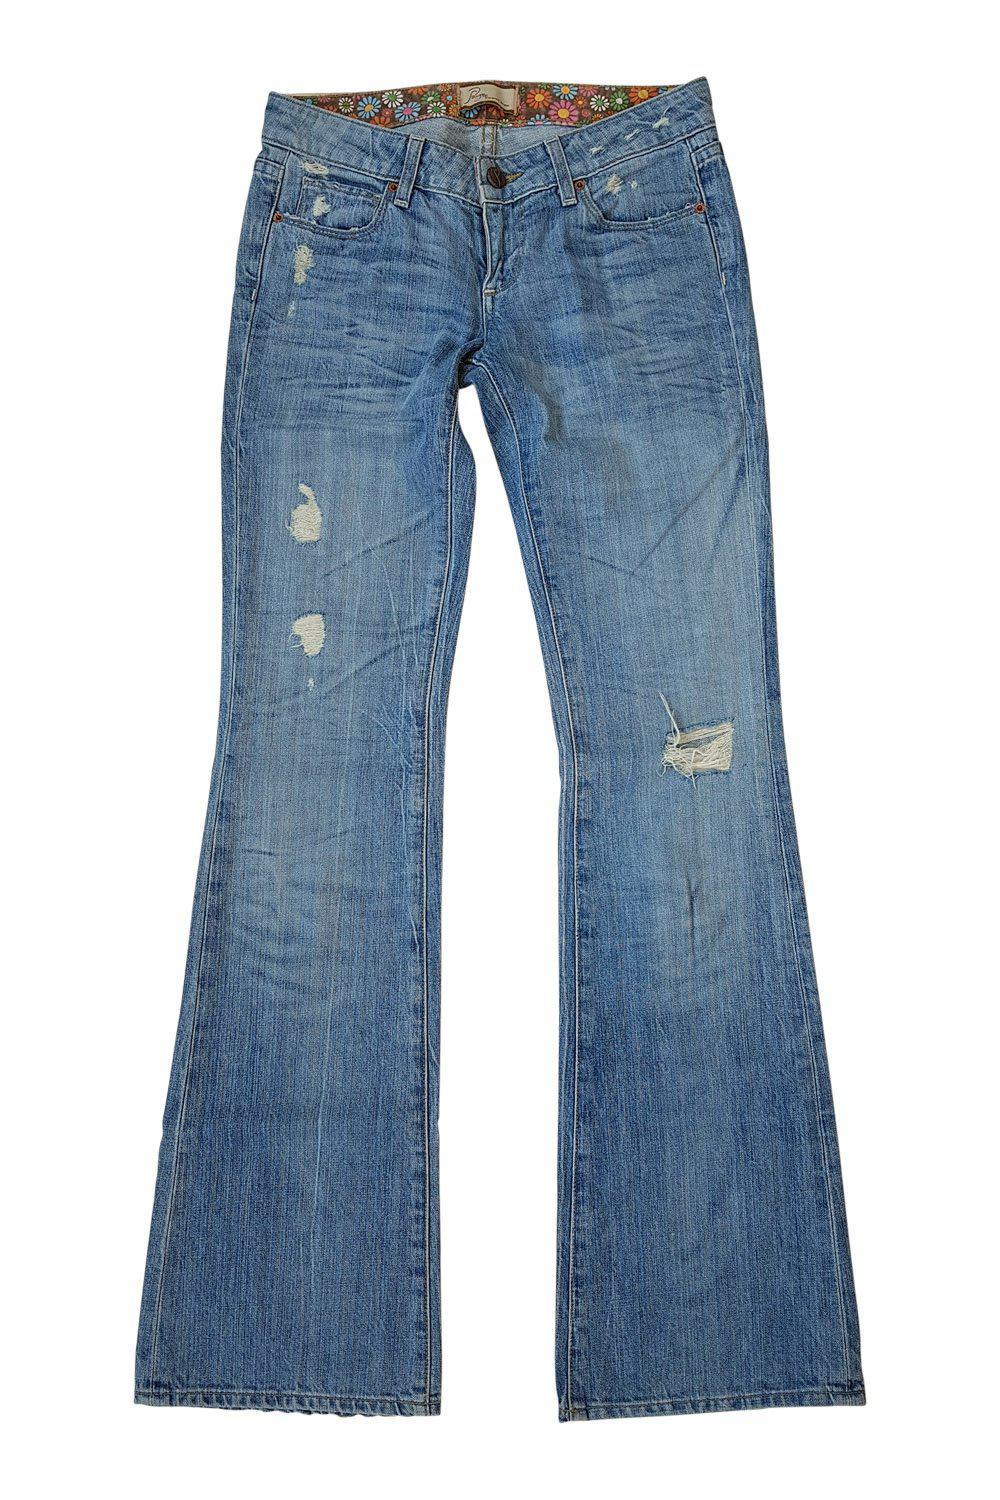 PAIGE Laurel Canyon Low Rise Bootcut Jeans (W25 L33)-Paige Denim-The Freperie